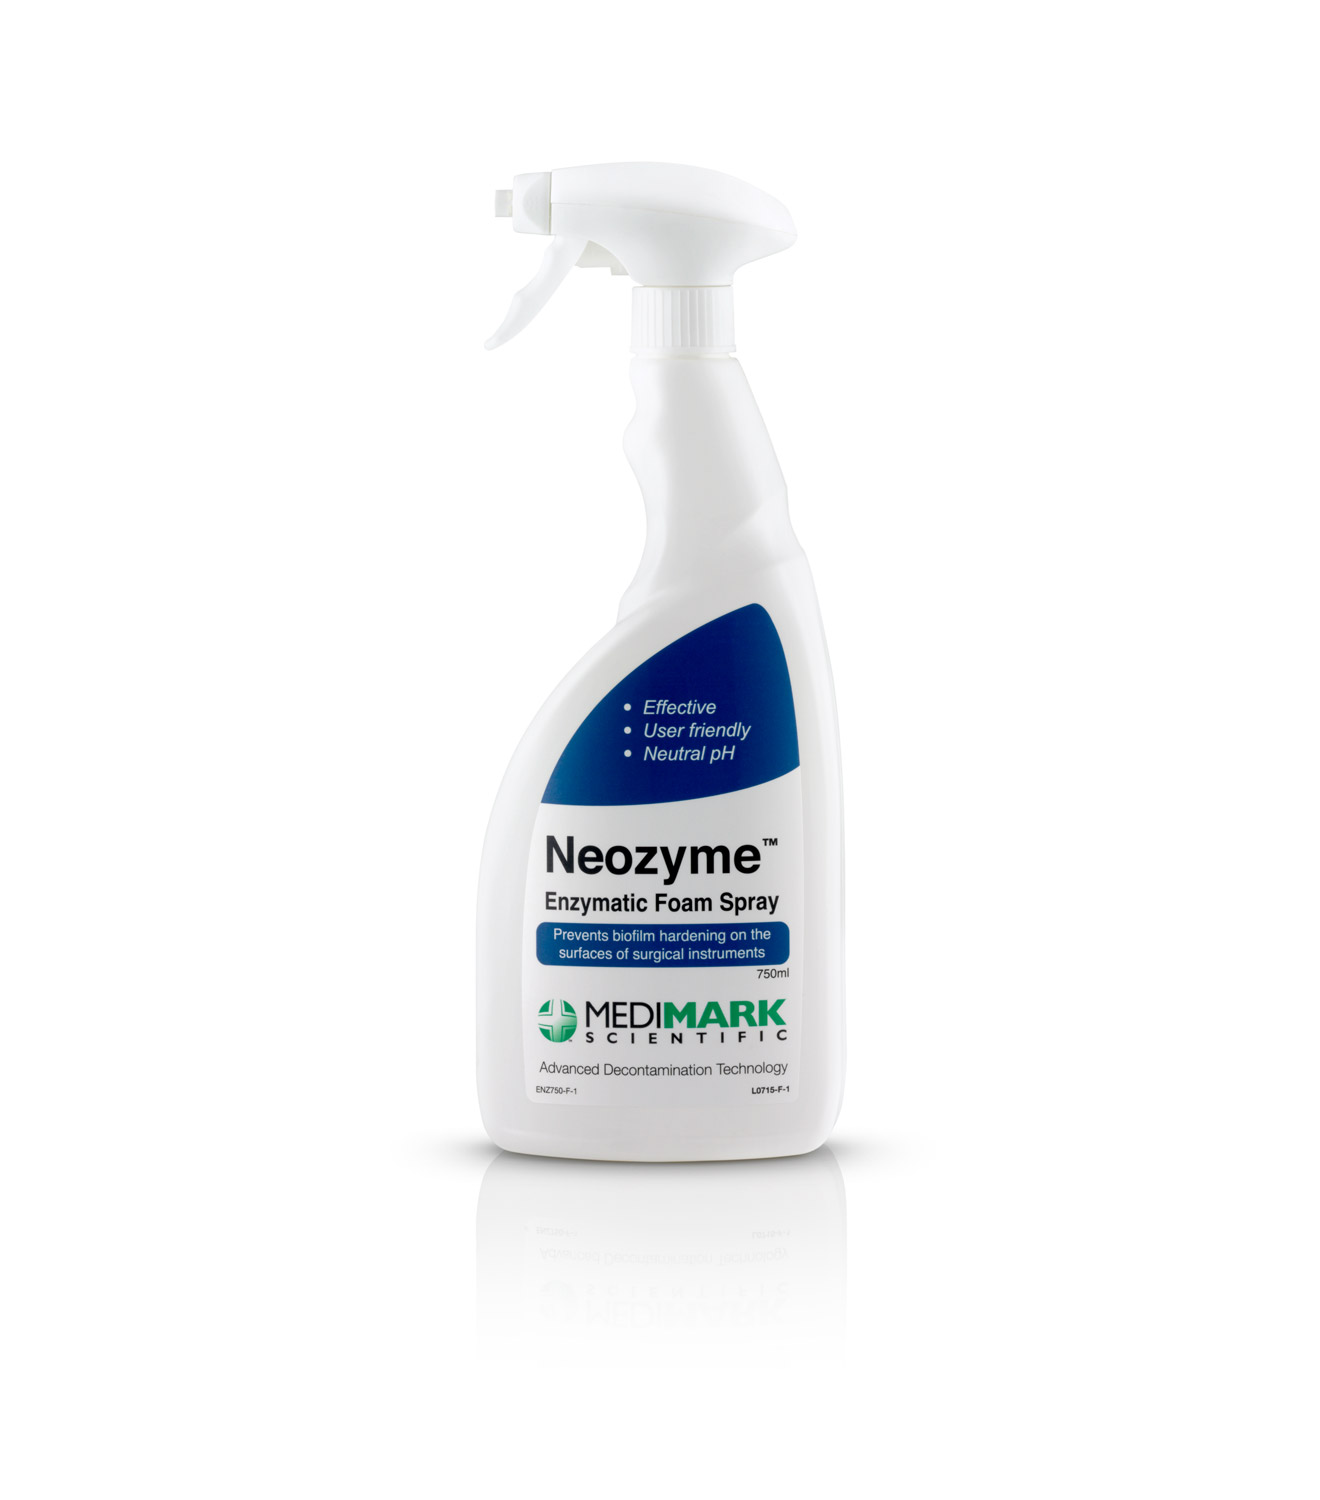 Neozyme Enzymatic Foam Spray